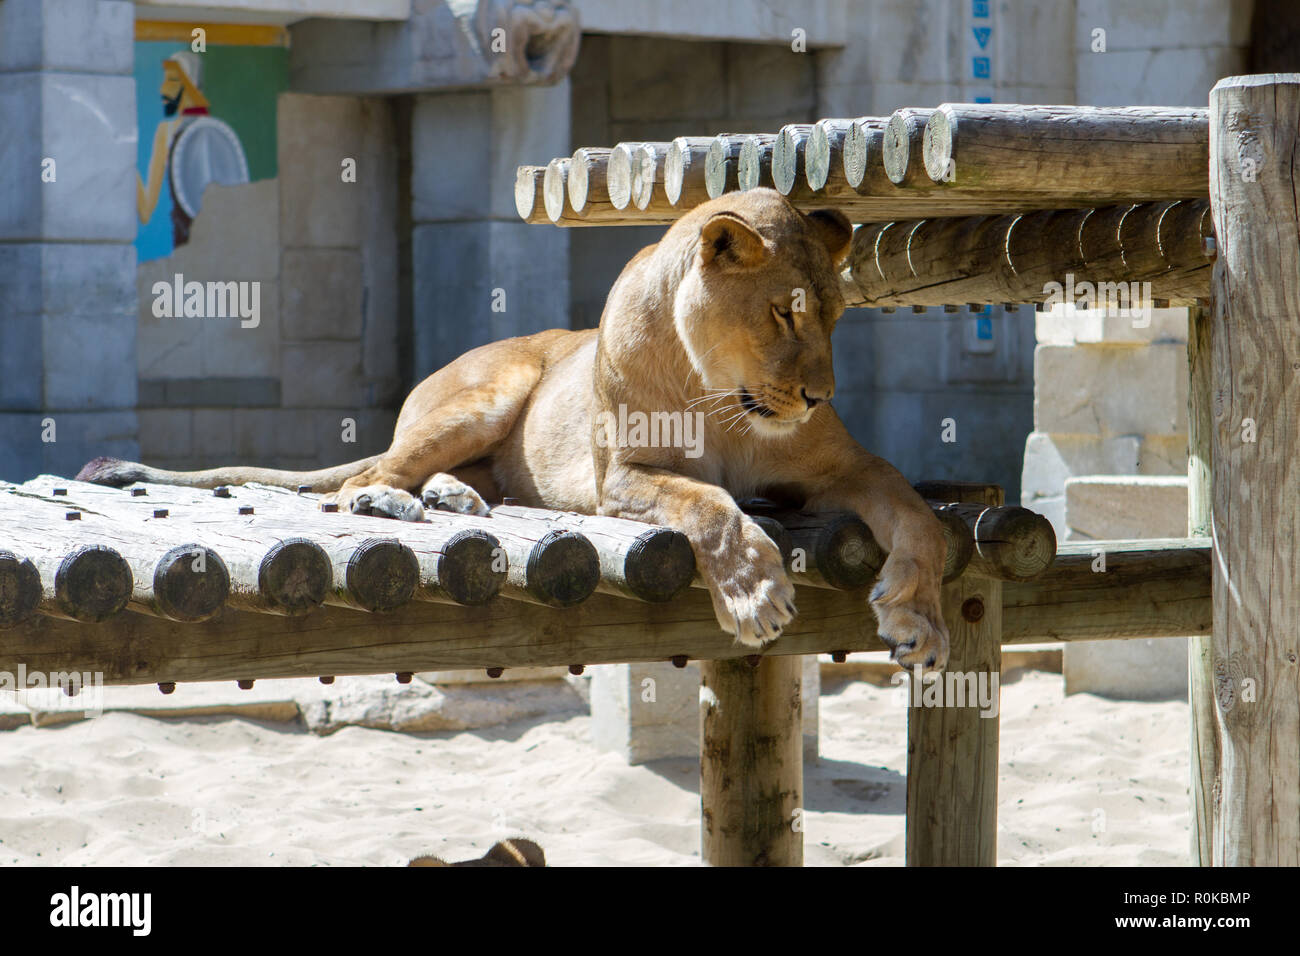 Le Löwe (Panthera leo) est une espèce de mammifères Fleischfresser de la famille des félidés. La femelle du Lion est la lionne, Sohn petit est le lionceau. Stockfoto